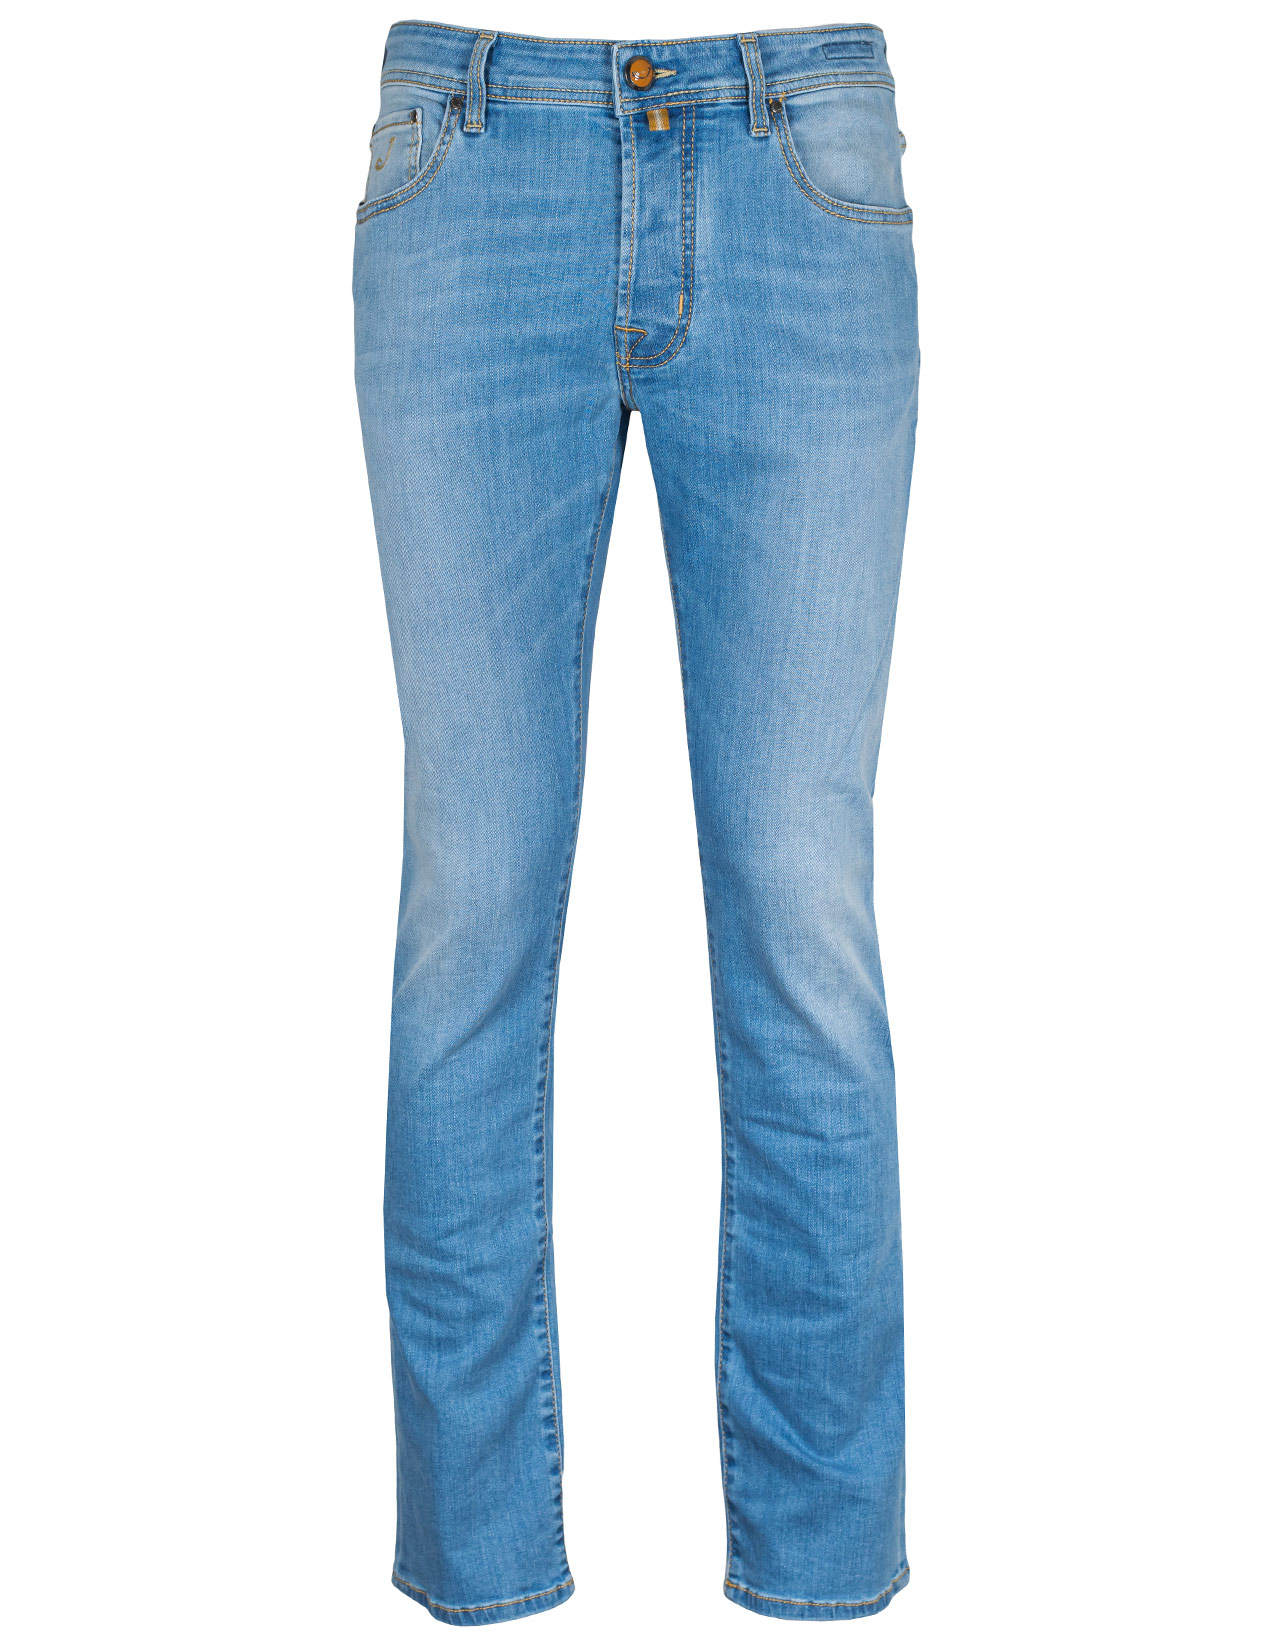 Jacob Cohen Jeans BARD "Rare Luxury" in hellblau verwaschen mit gelben Stitches